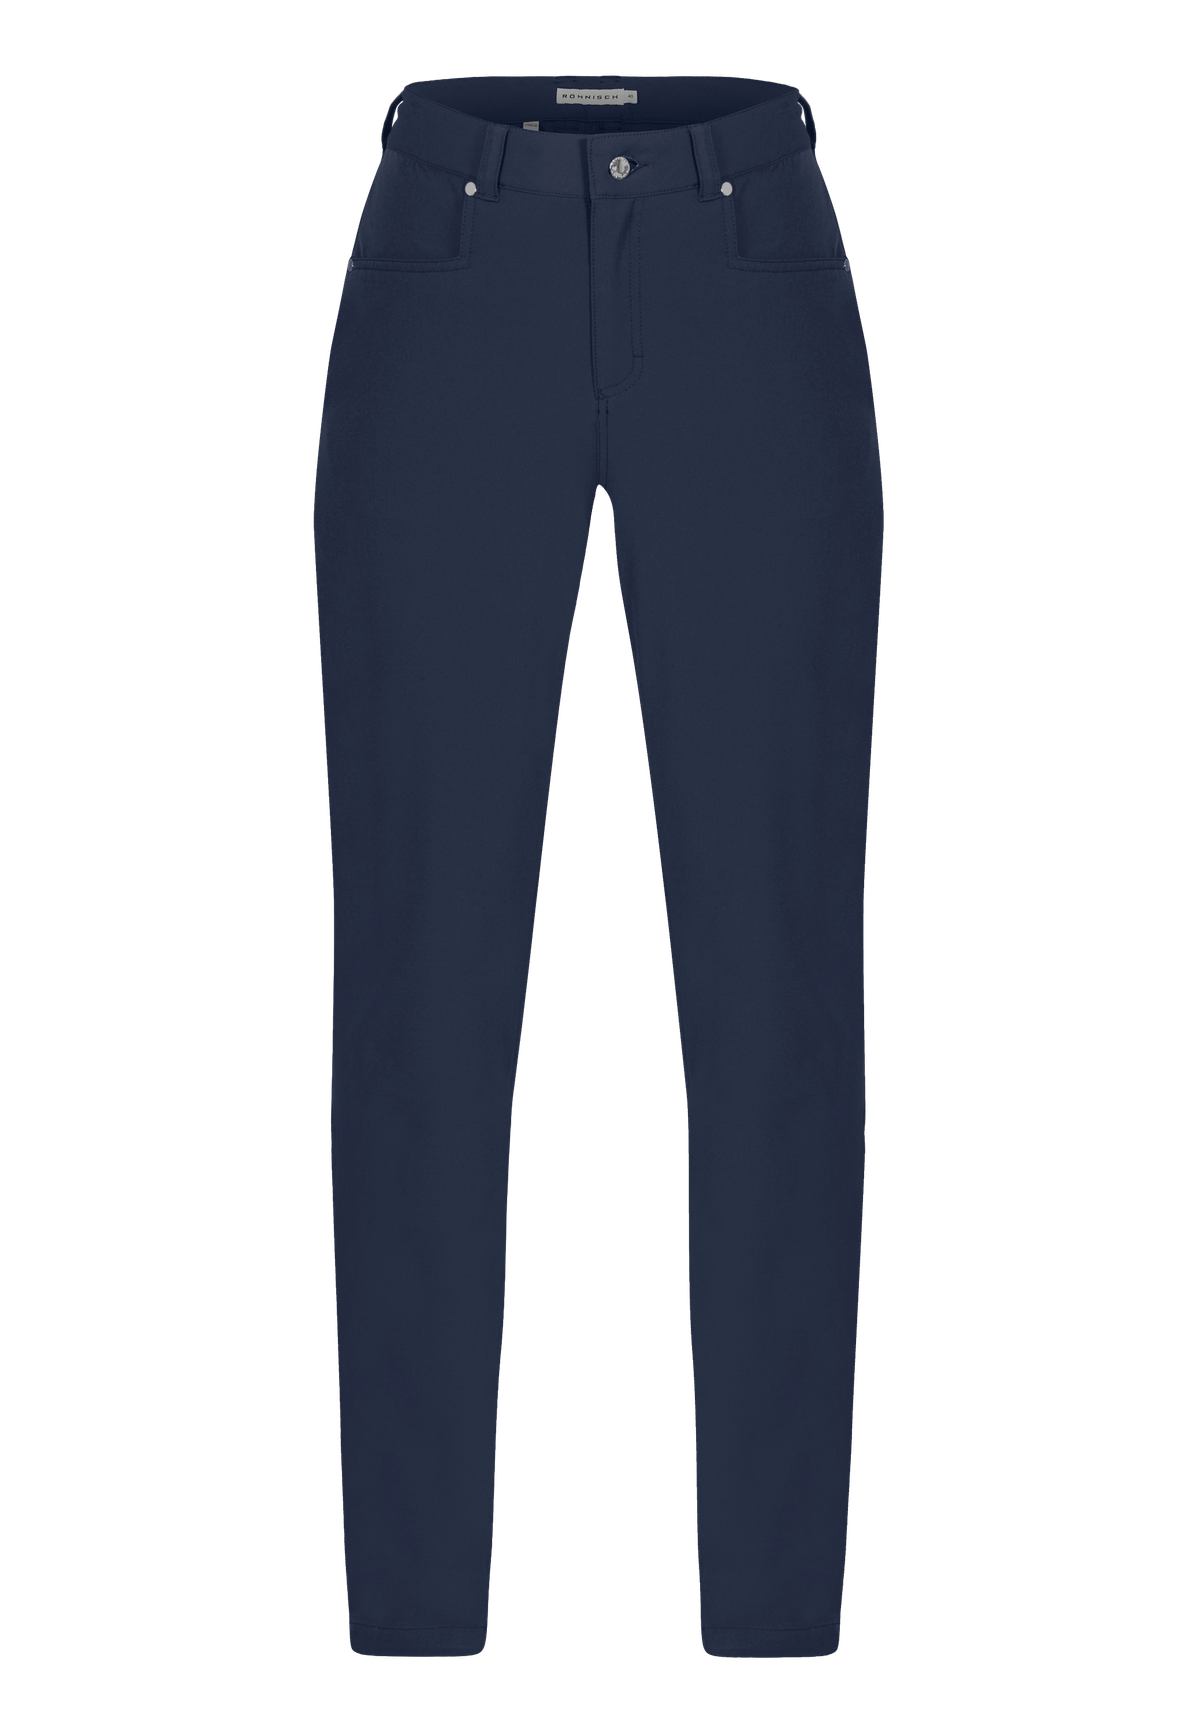 Chie comfort Pants 32, Navy